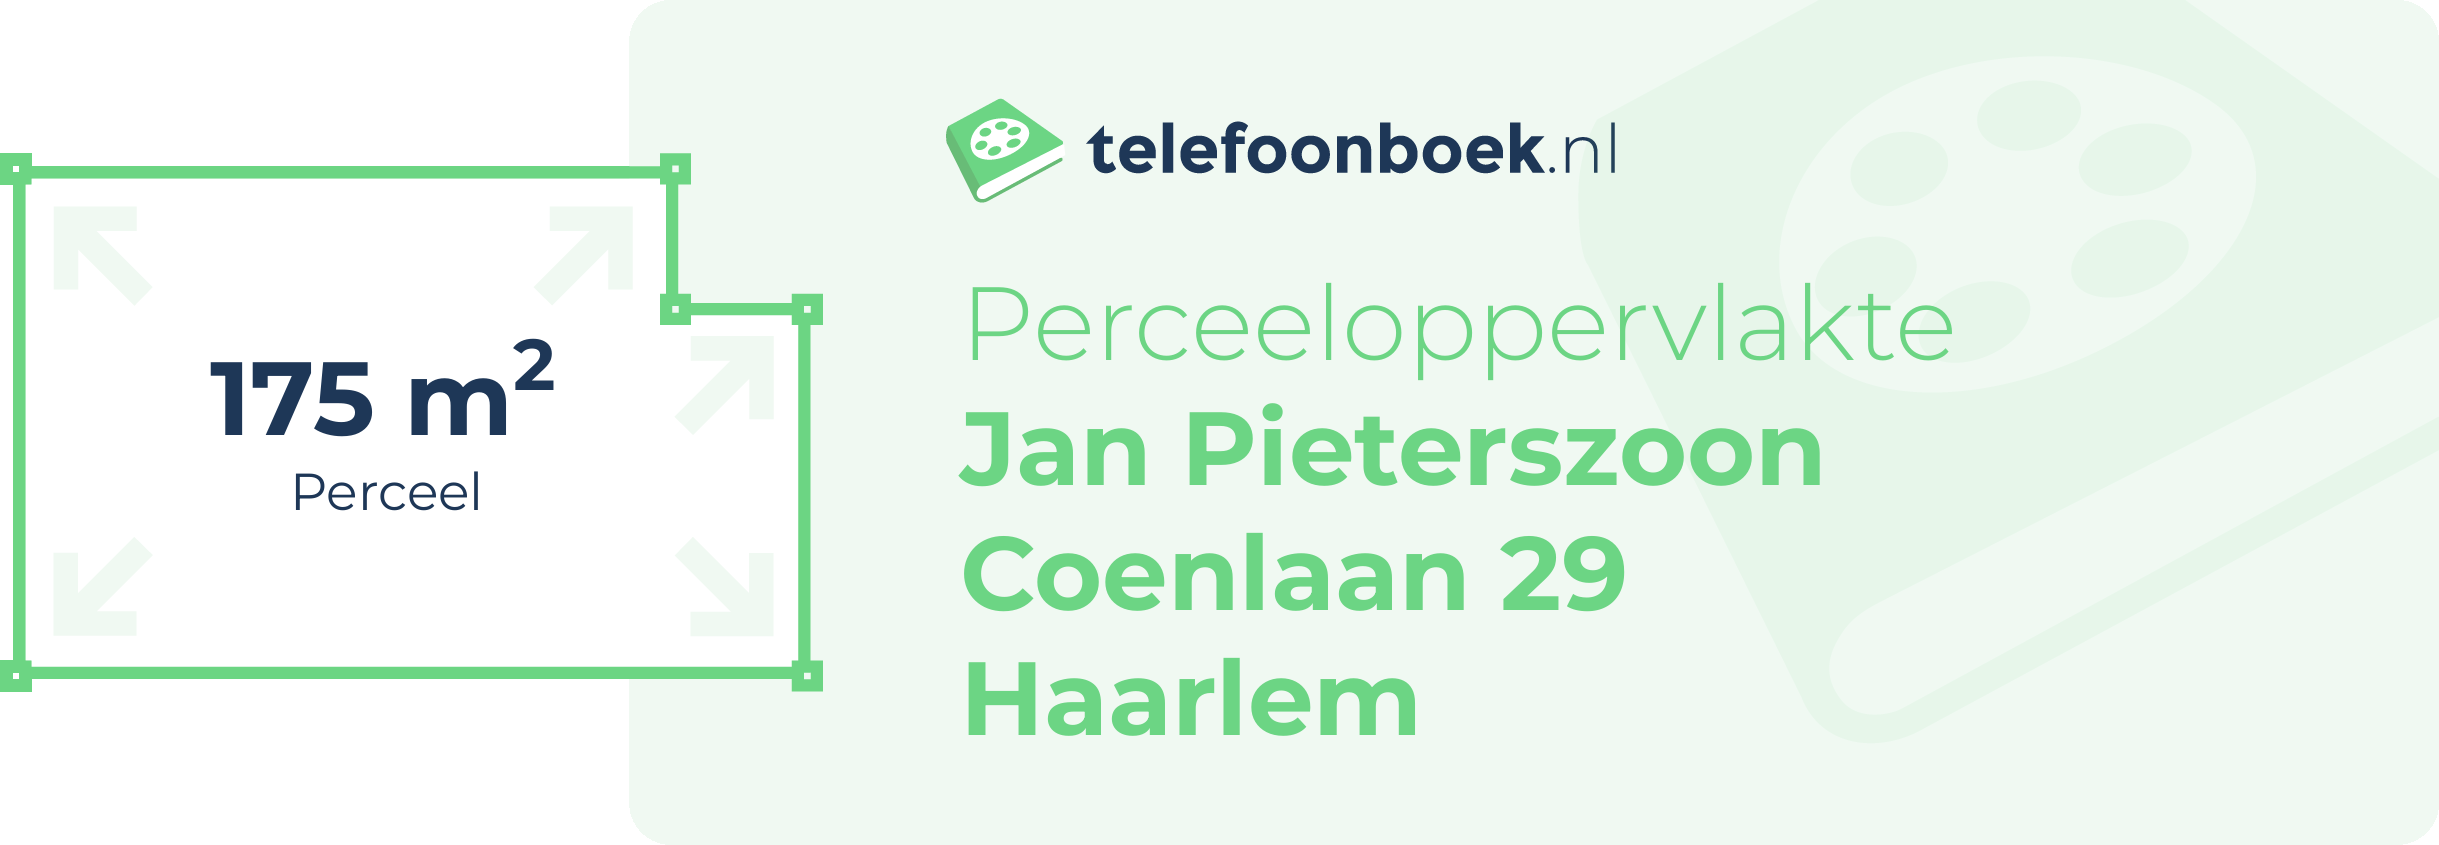 Perceeloppervlakte Jan Pieterszoon Coenlaan 29 Haarlem